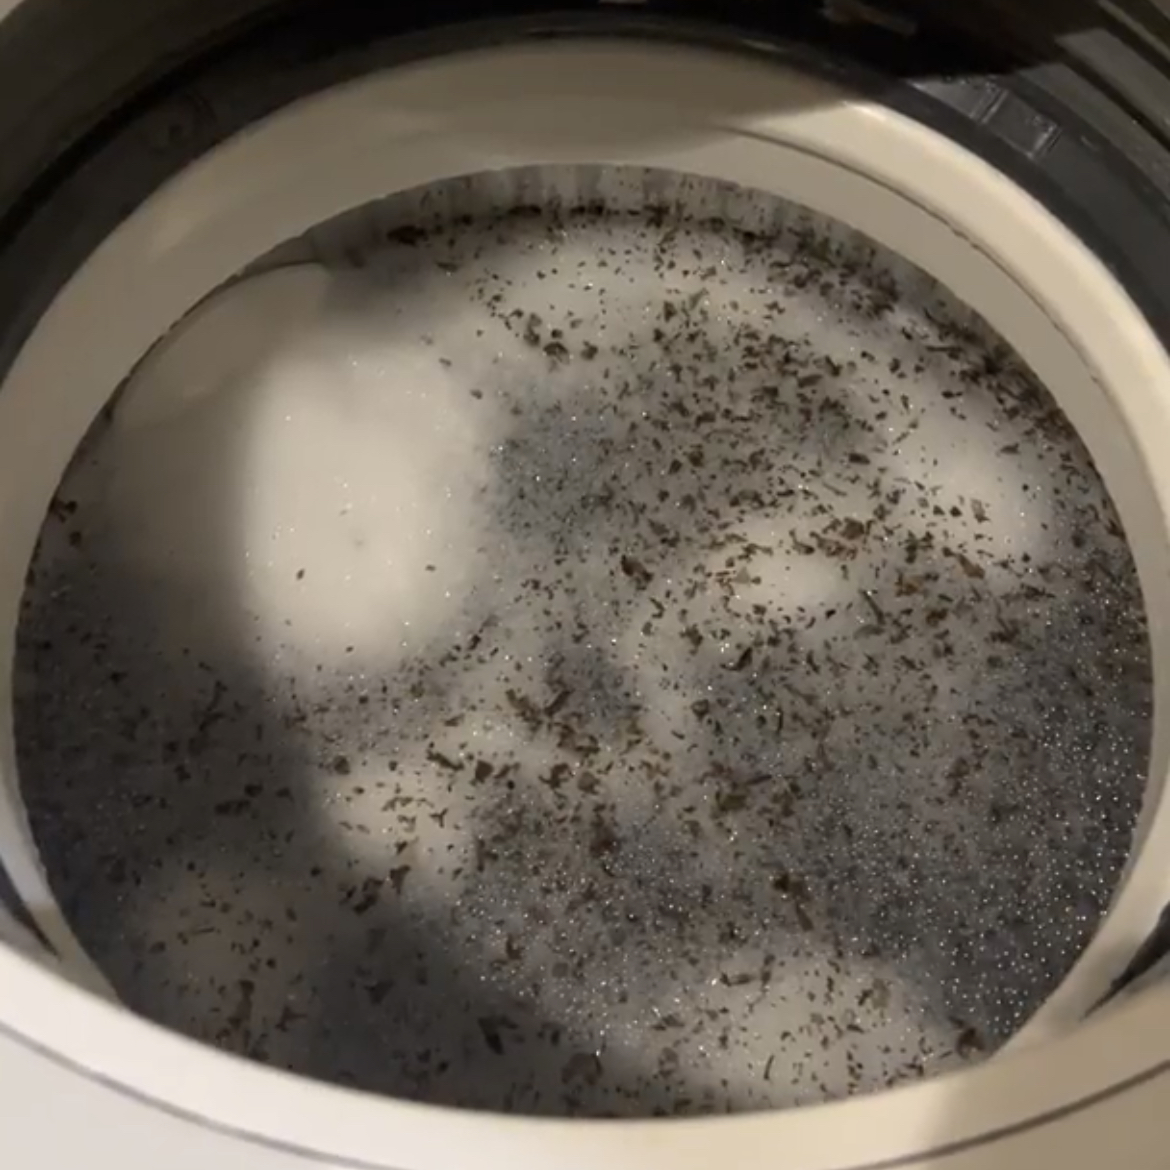  「洗濯槽」のワカメのような黒カビ…。カビの繁殖を予防する３つの方法【梅雨時期に知りたい洗濯術】 